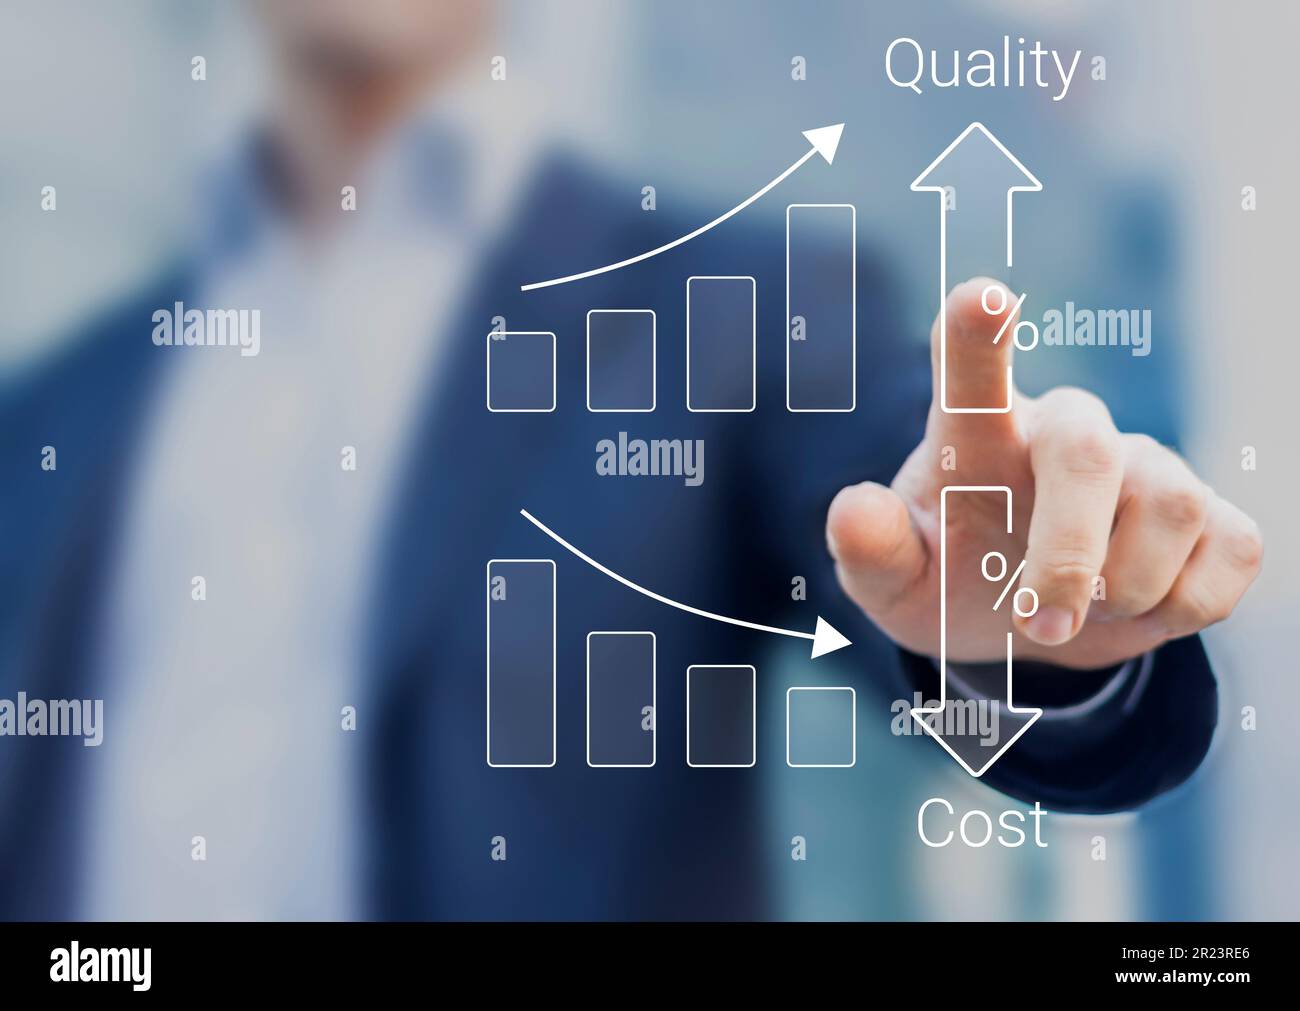 Qualitäts- und Kostenoptimierung für Produkte oder Dienstleistungen zur Verbesserung der Kundenzufriedenheit und der Unternehmensleistung. Person-Touch-Konzept. Succ Stockfoto